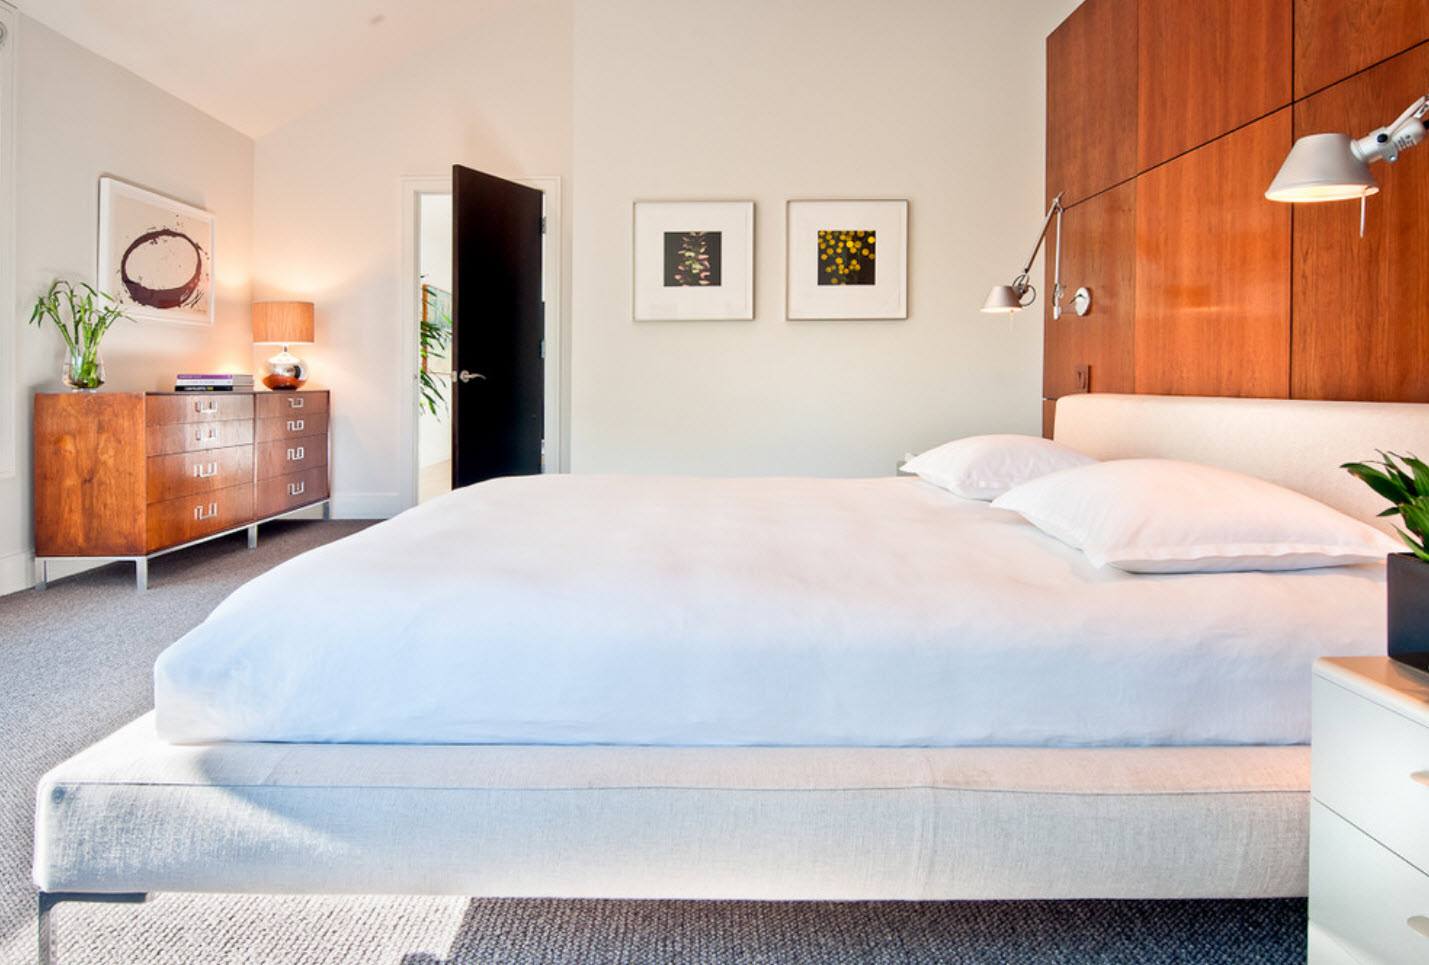 Идеальная кровать: как сделать комфортно, чисто и красиво